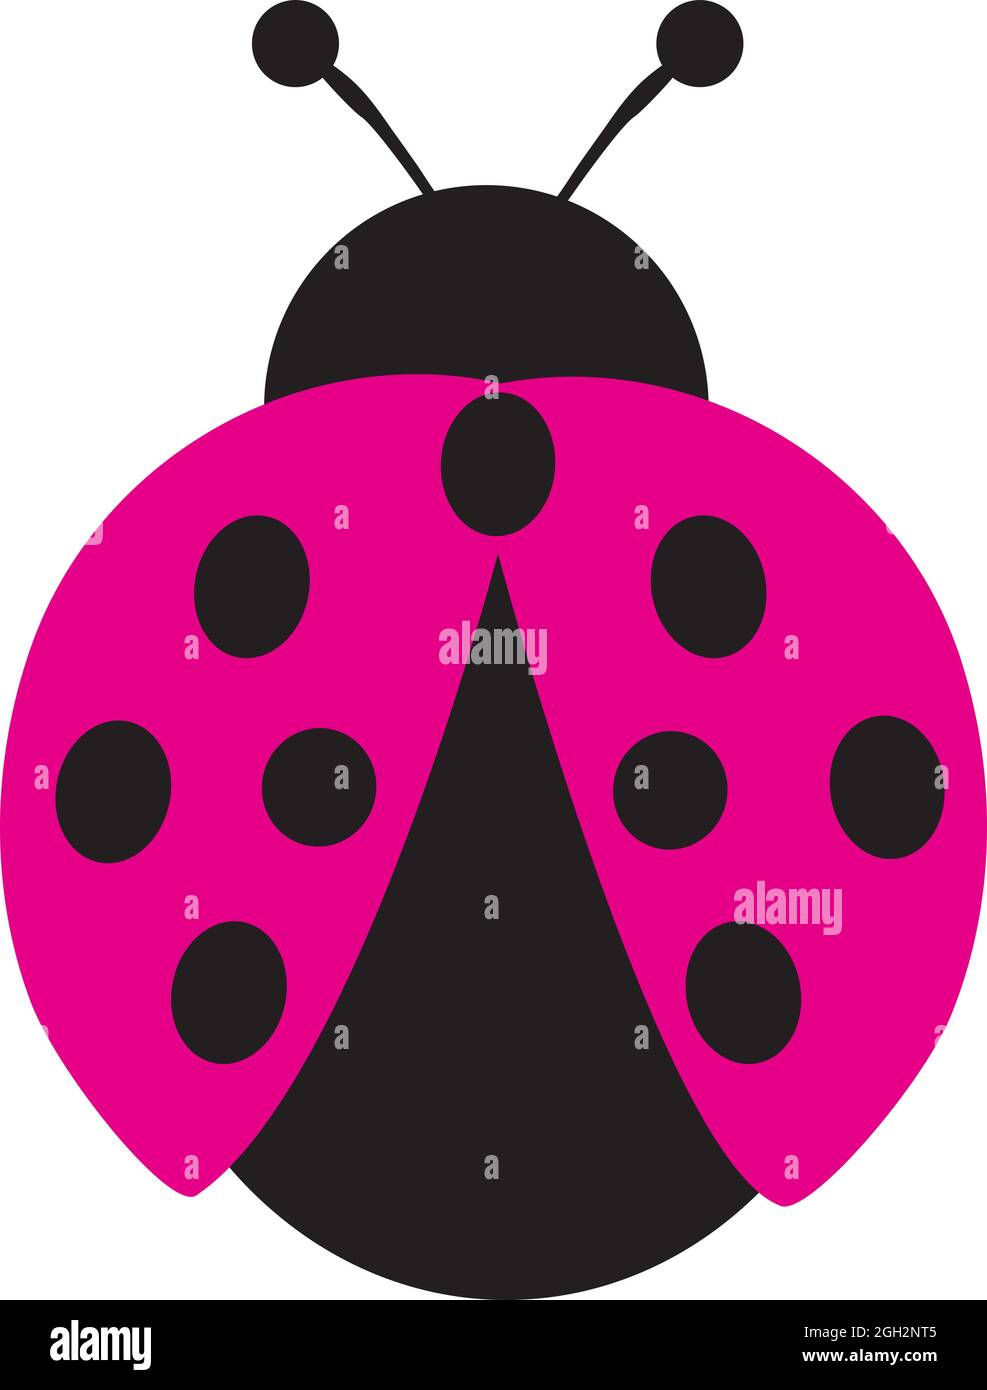 illustrazione vettoriale di un ladybug rosa. Illustrazione Vettoriale